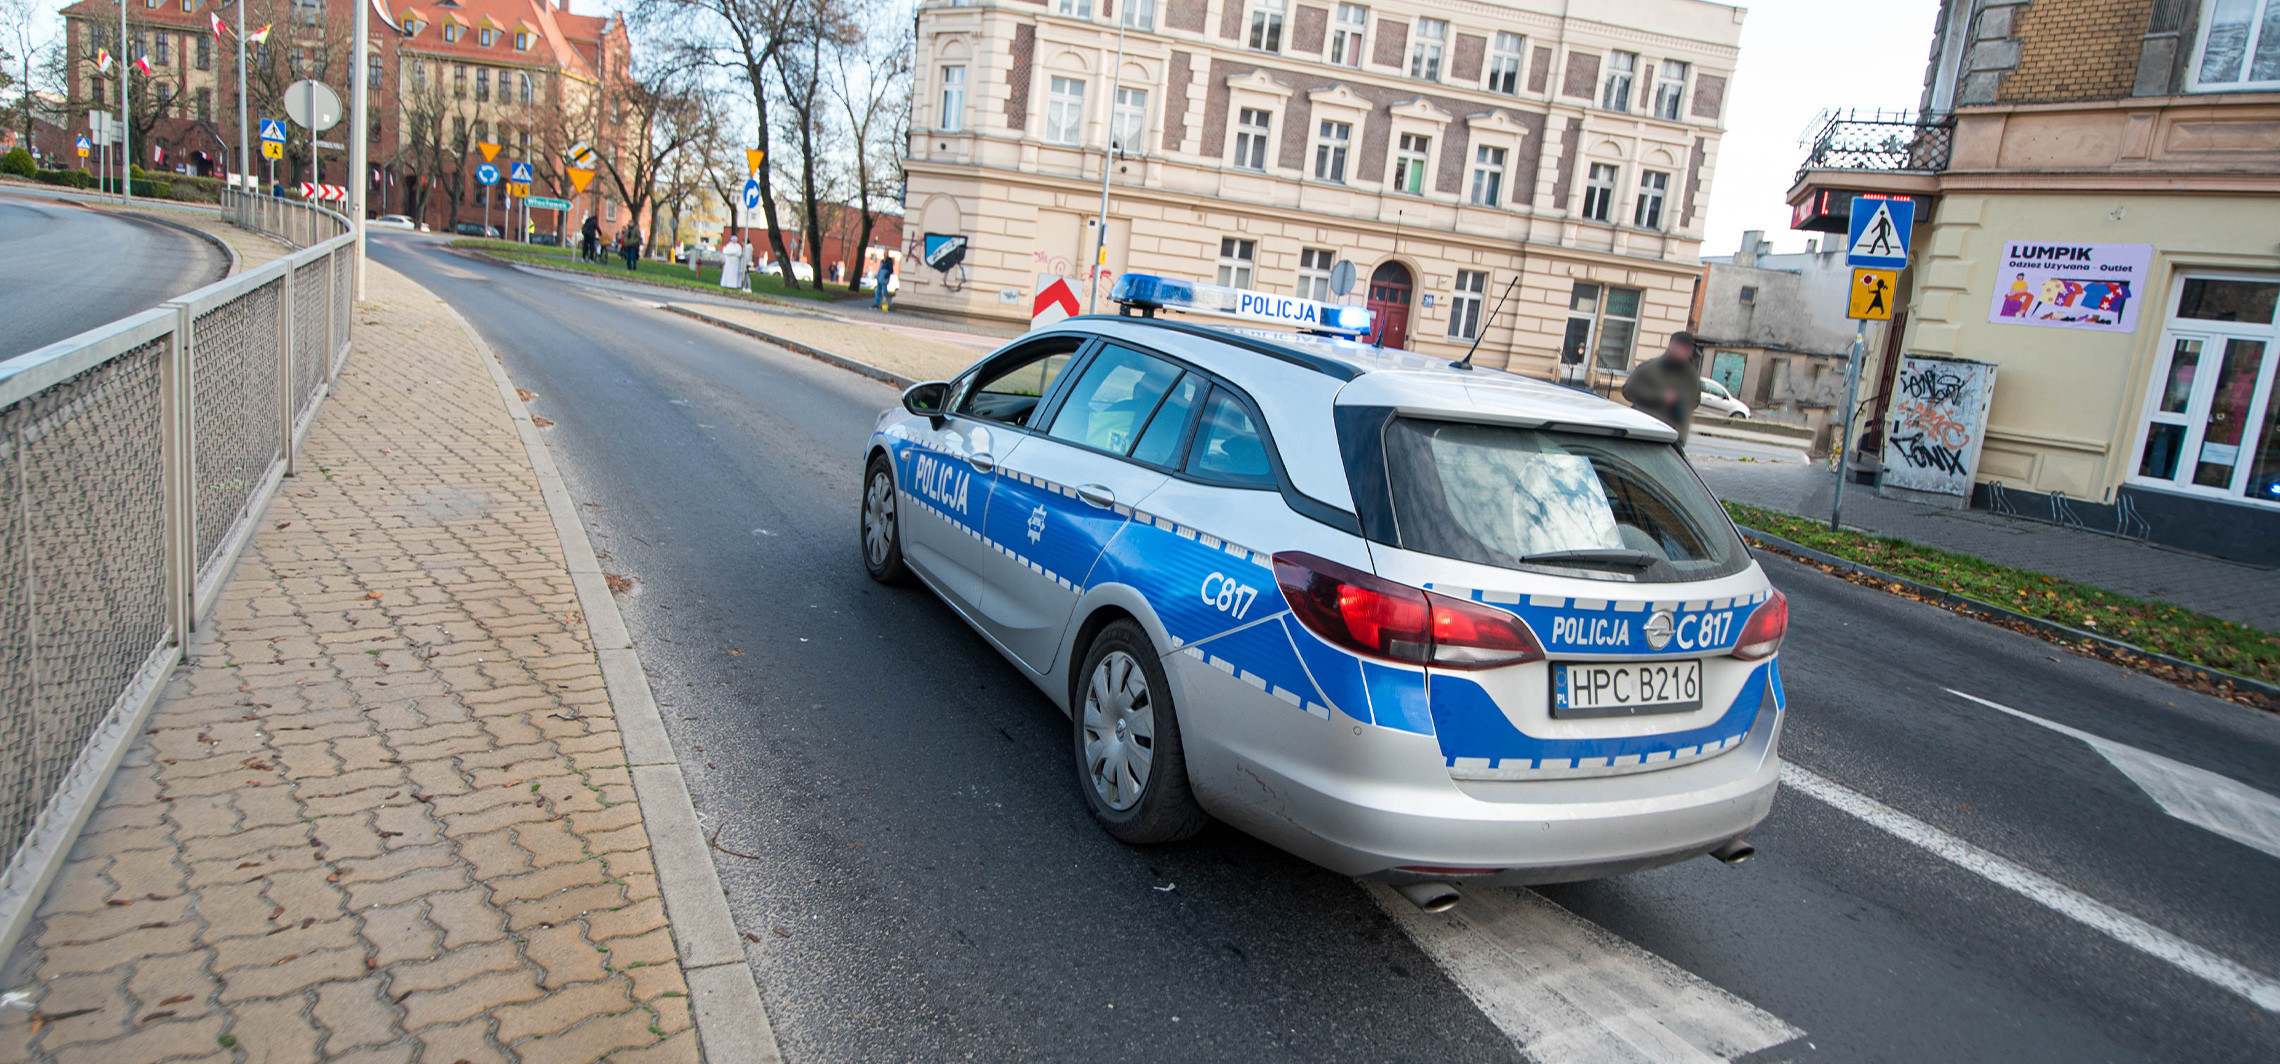 Inowrocław - Będą dodatkowe patrole policji w mieście